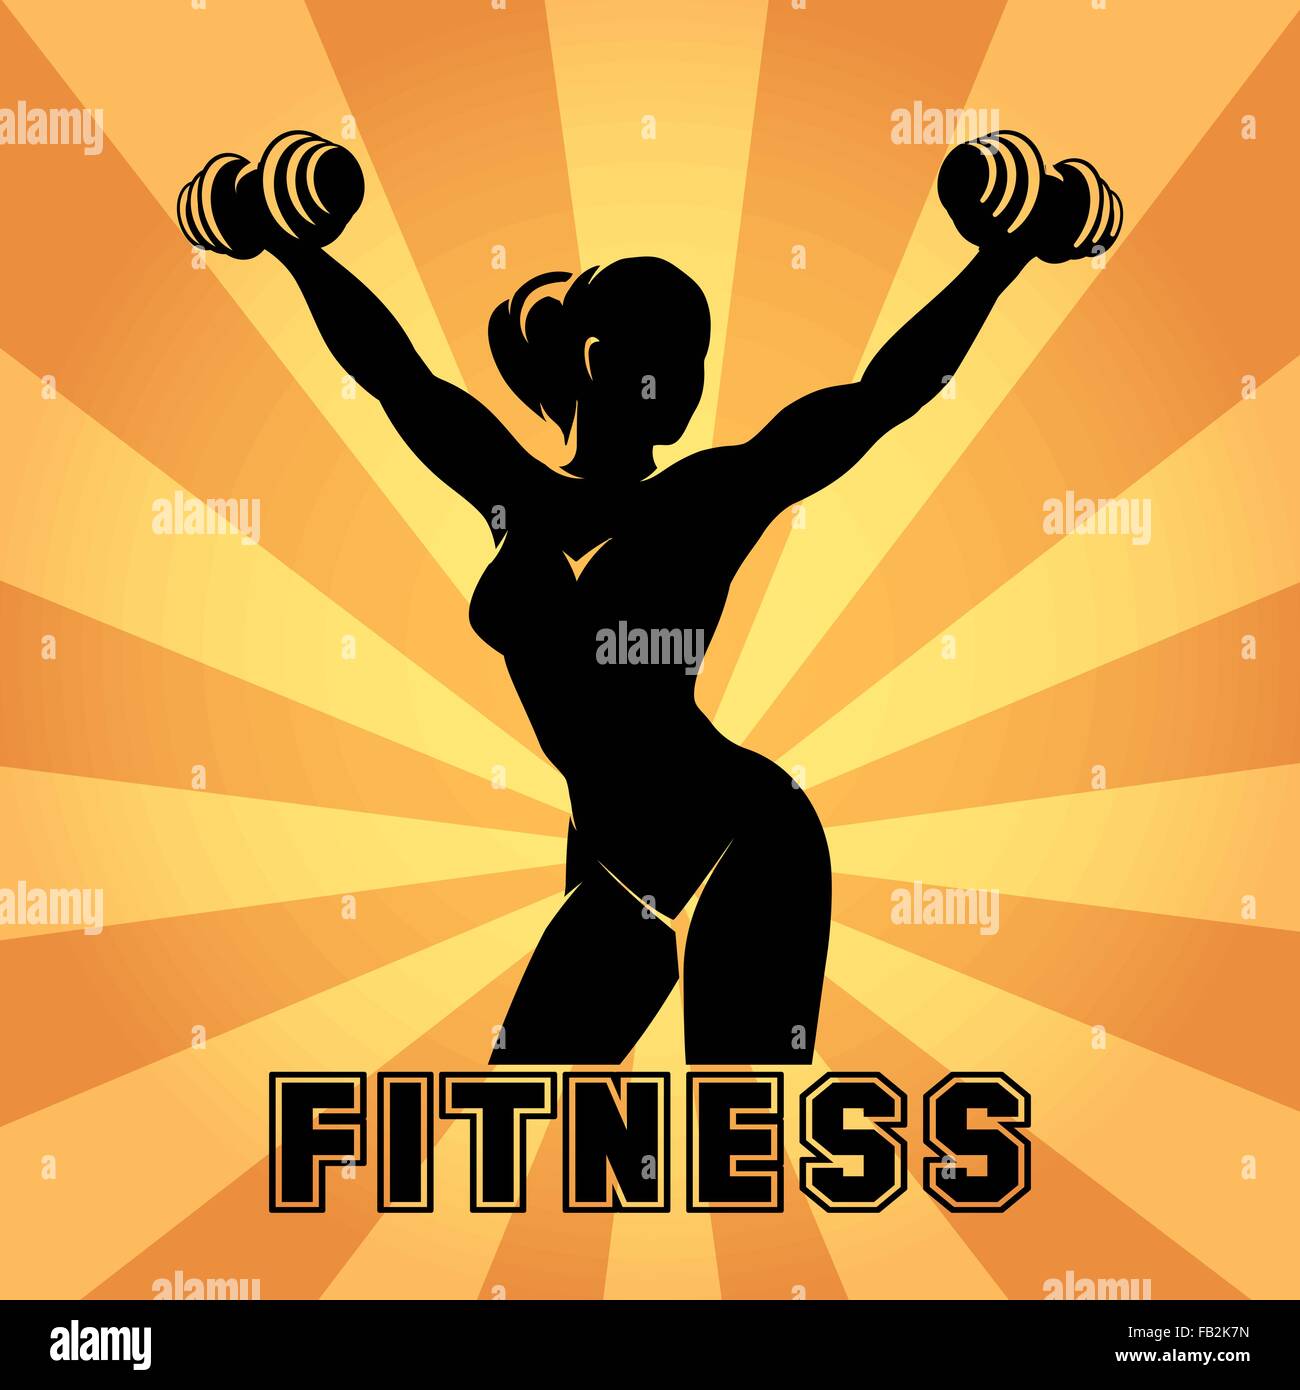 Fitness Club, Fitness-Studio Emblem oder Poster Design. Silhouette der sportlichen Frau mit Hanteln. Kostenlose Schriftart verwendet. Stock Vektor